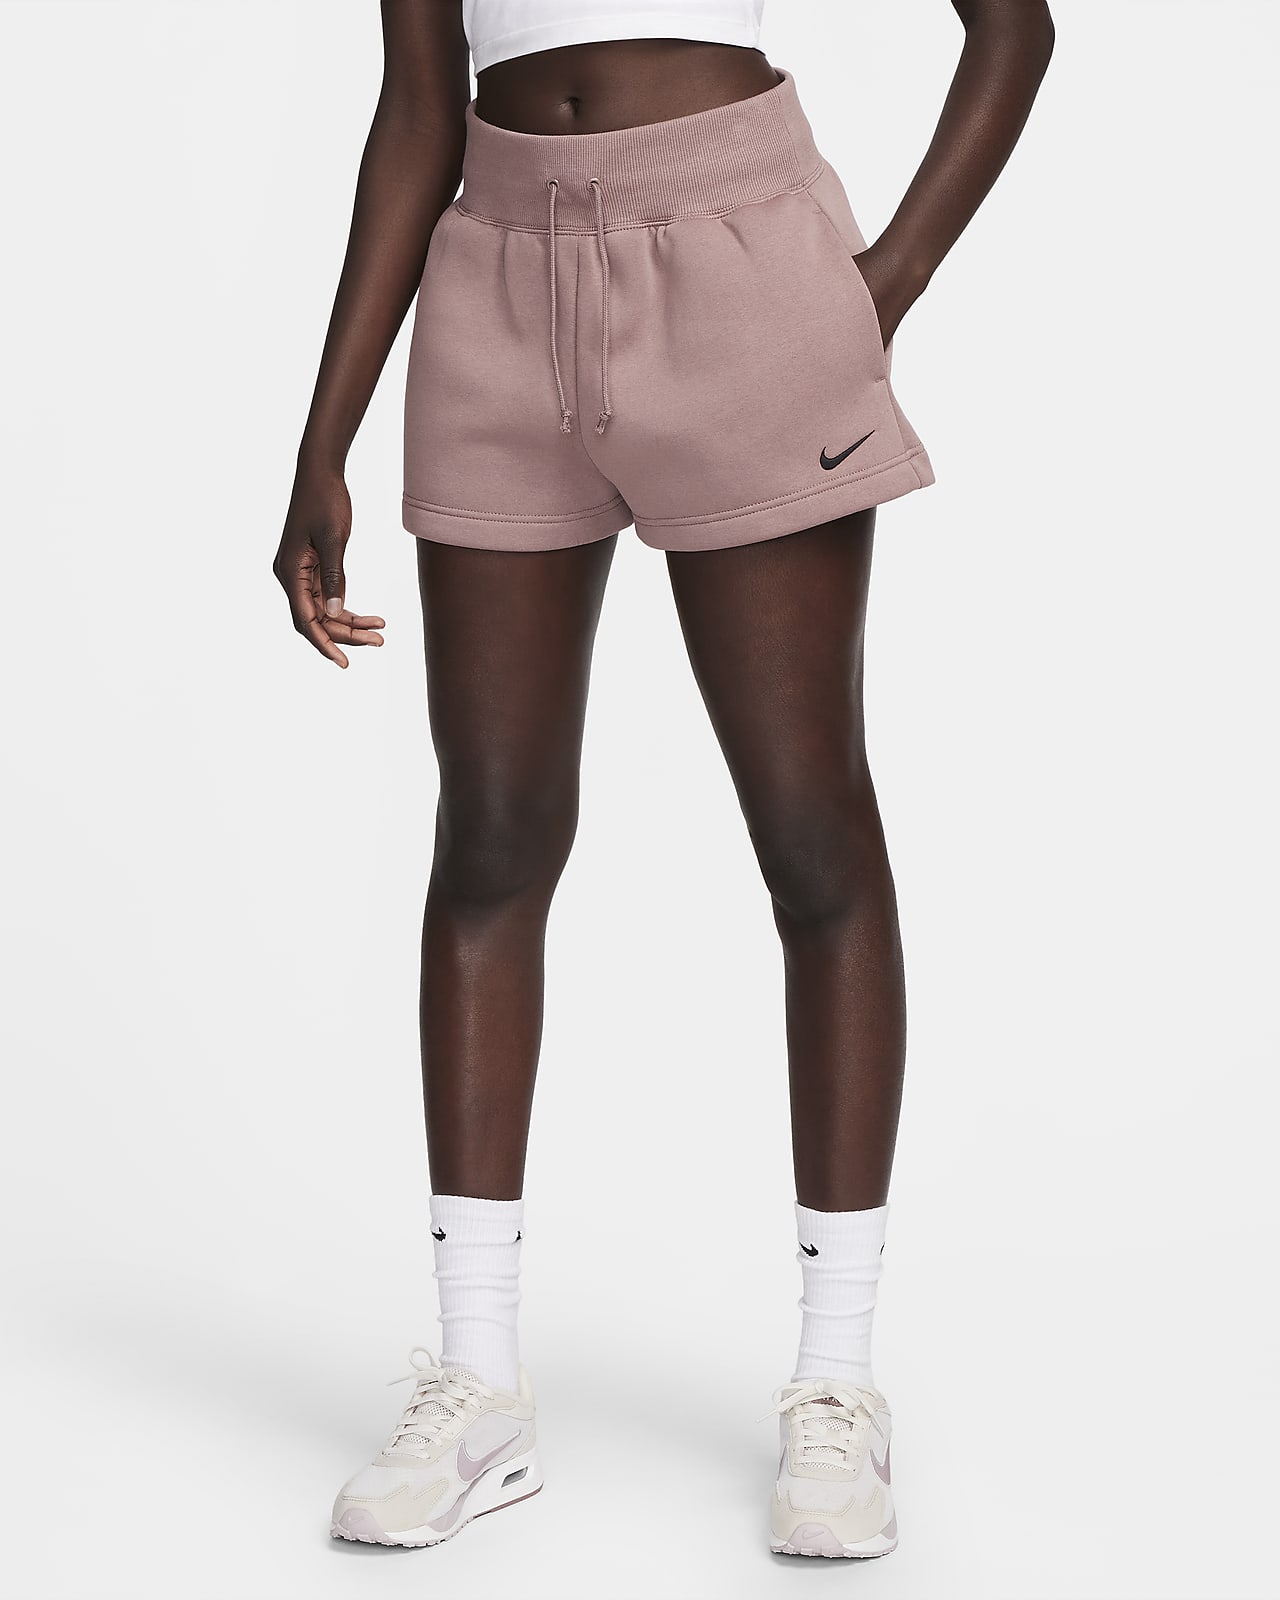 Nike Sportswear's Women's Crew & Shorts Release